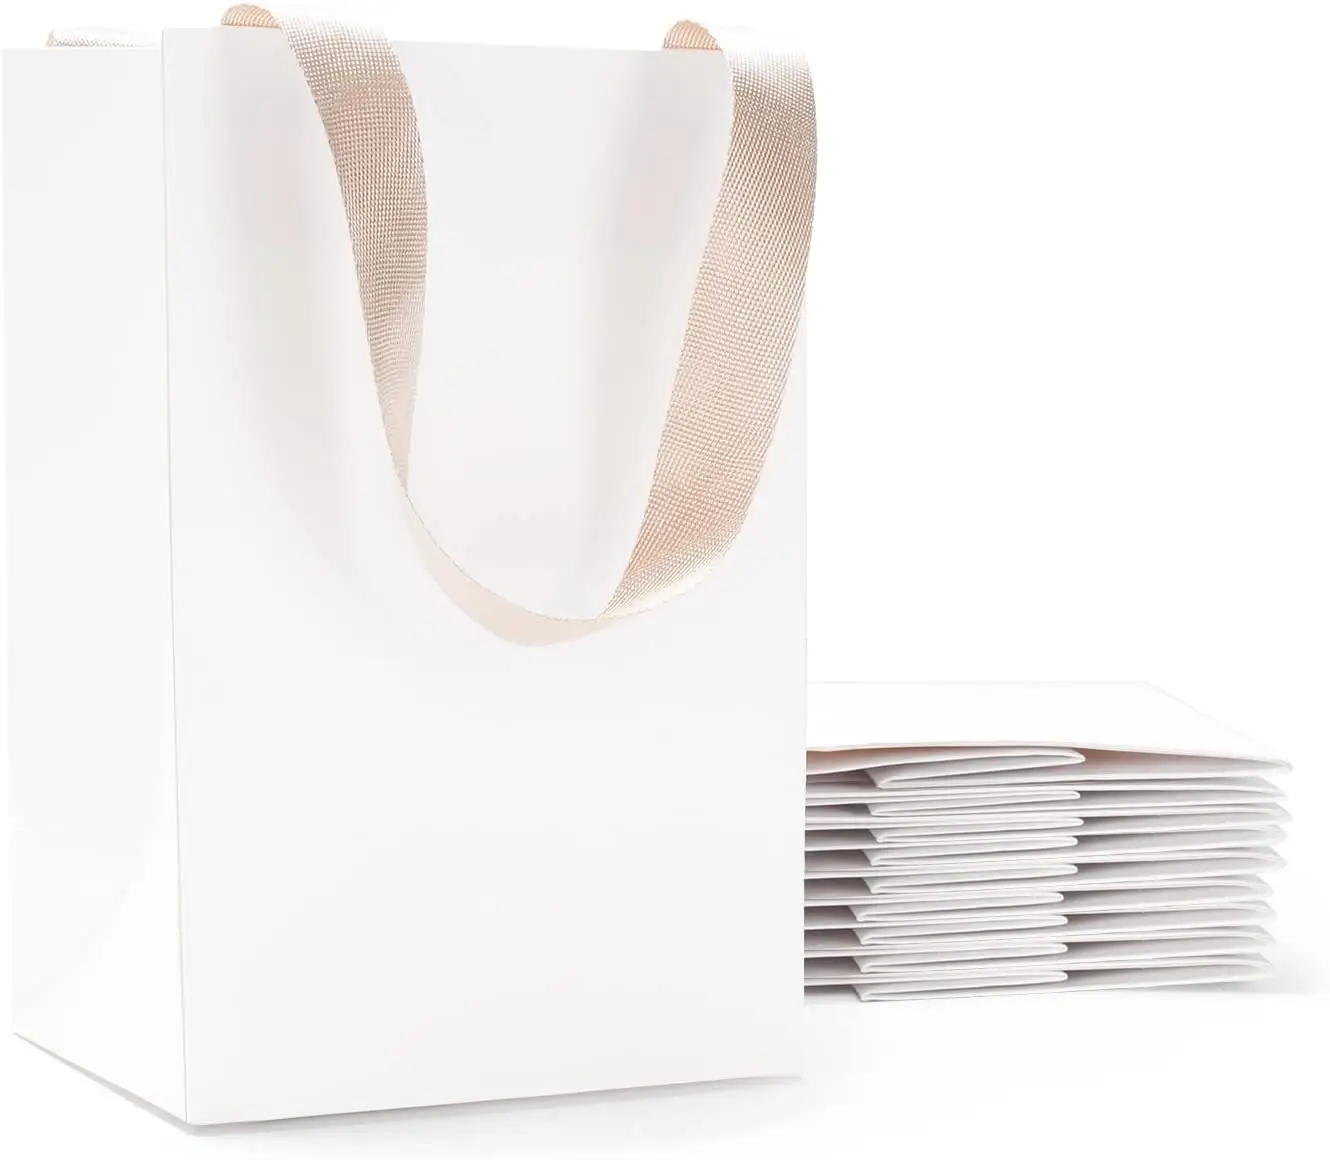 Perakende özel logo kişiselleştirilmiş beyaz şerit kolu butik alışveriş ambalaj hediye euro tote kağıt torba